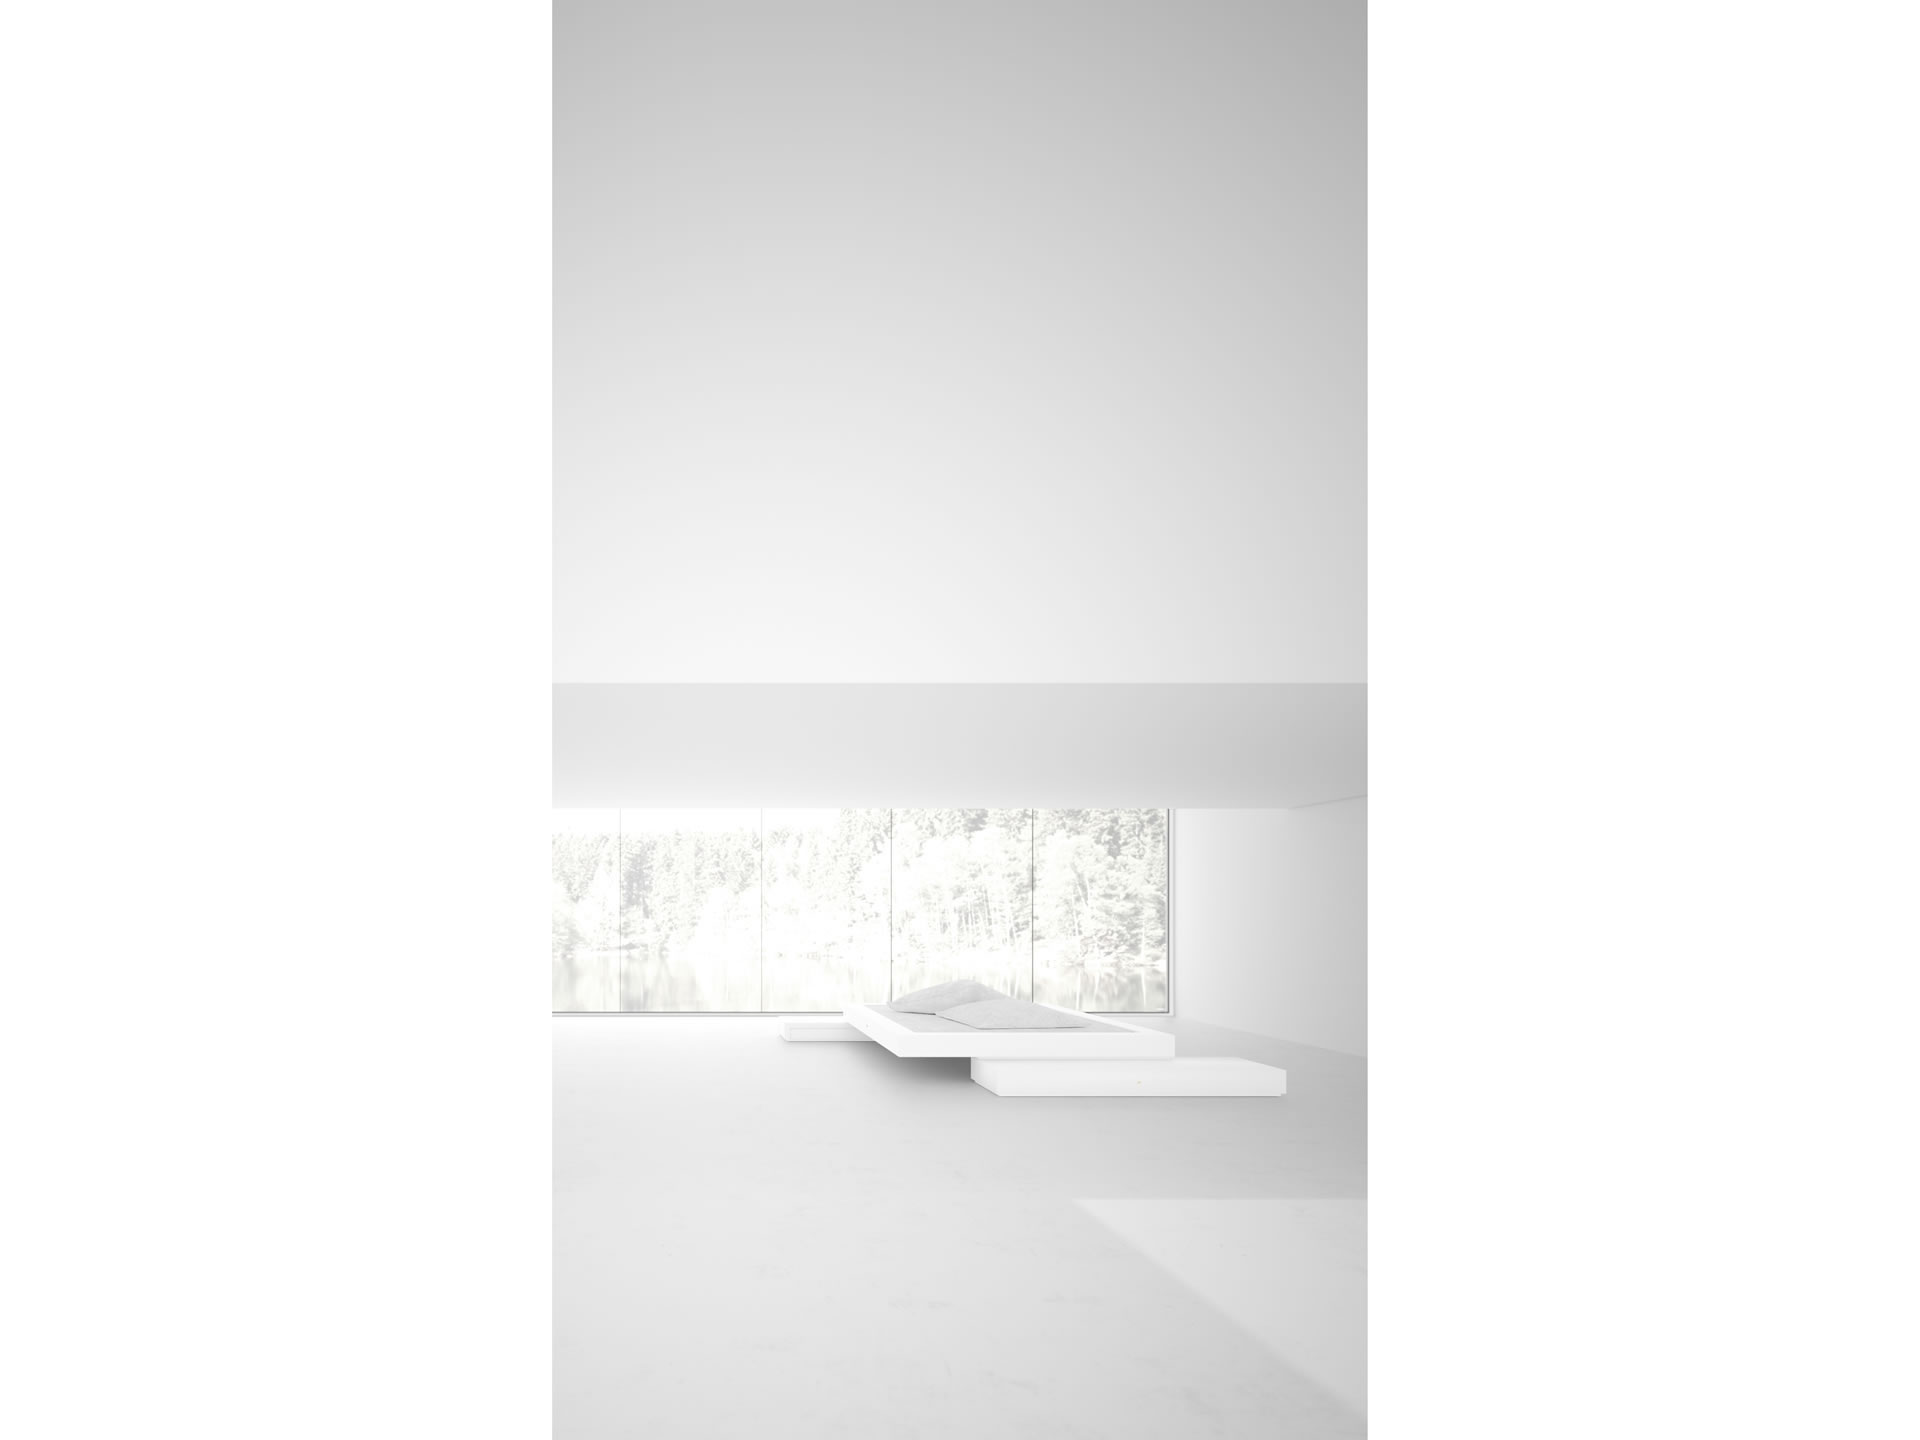 FELIX SCHWAKE BETT VI einzigartiges Weisses Design Bett